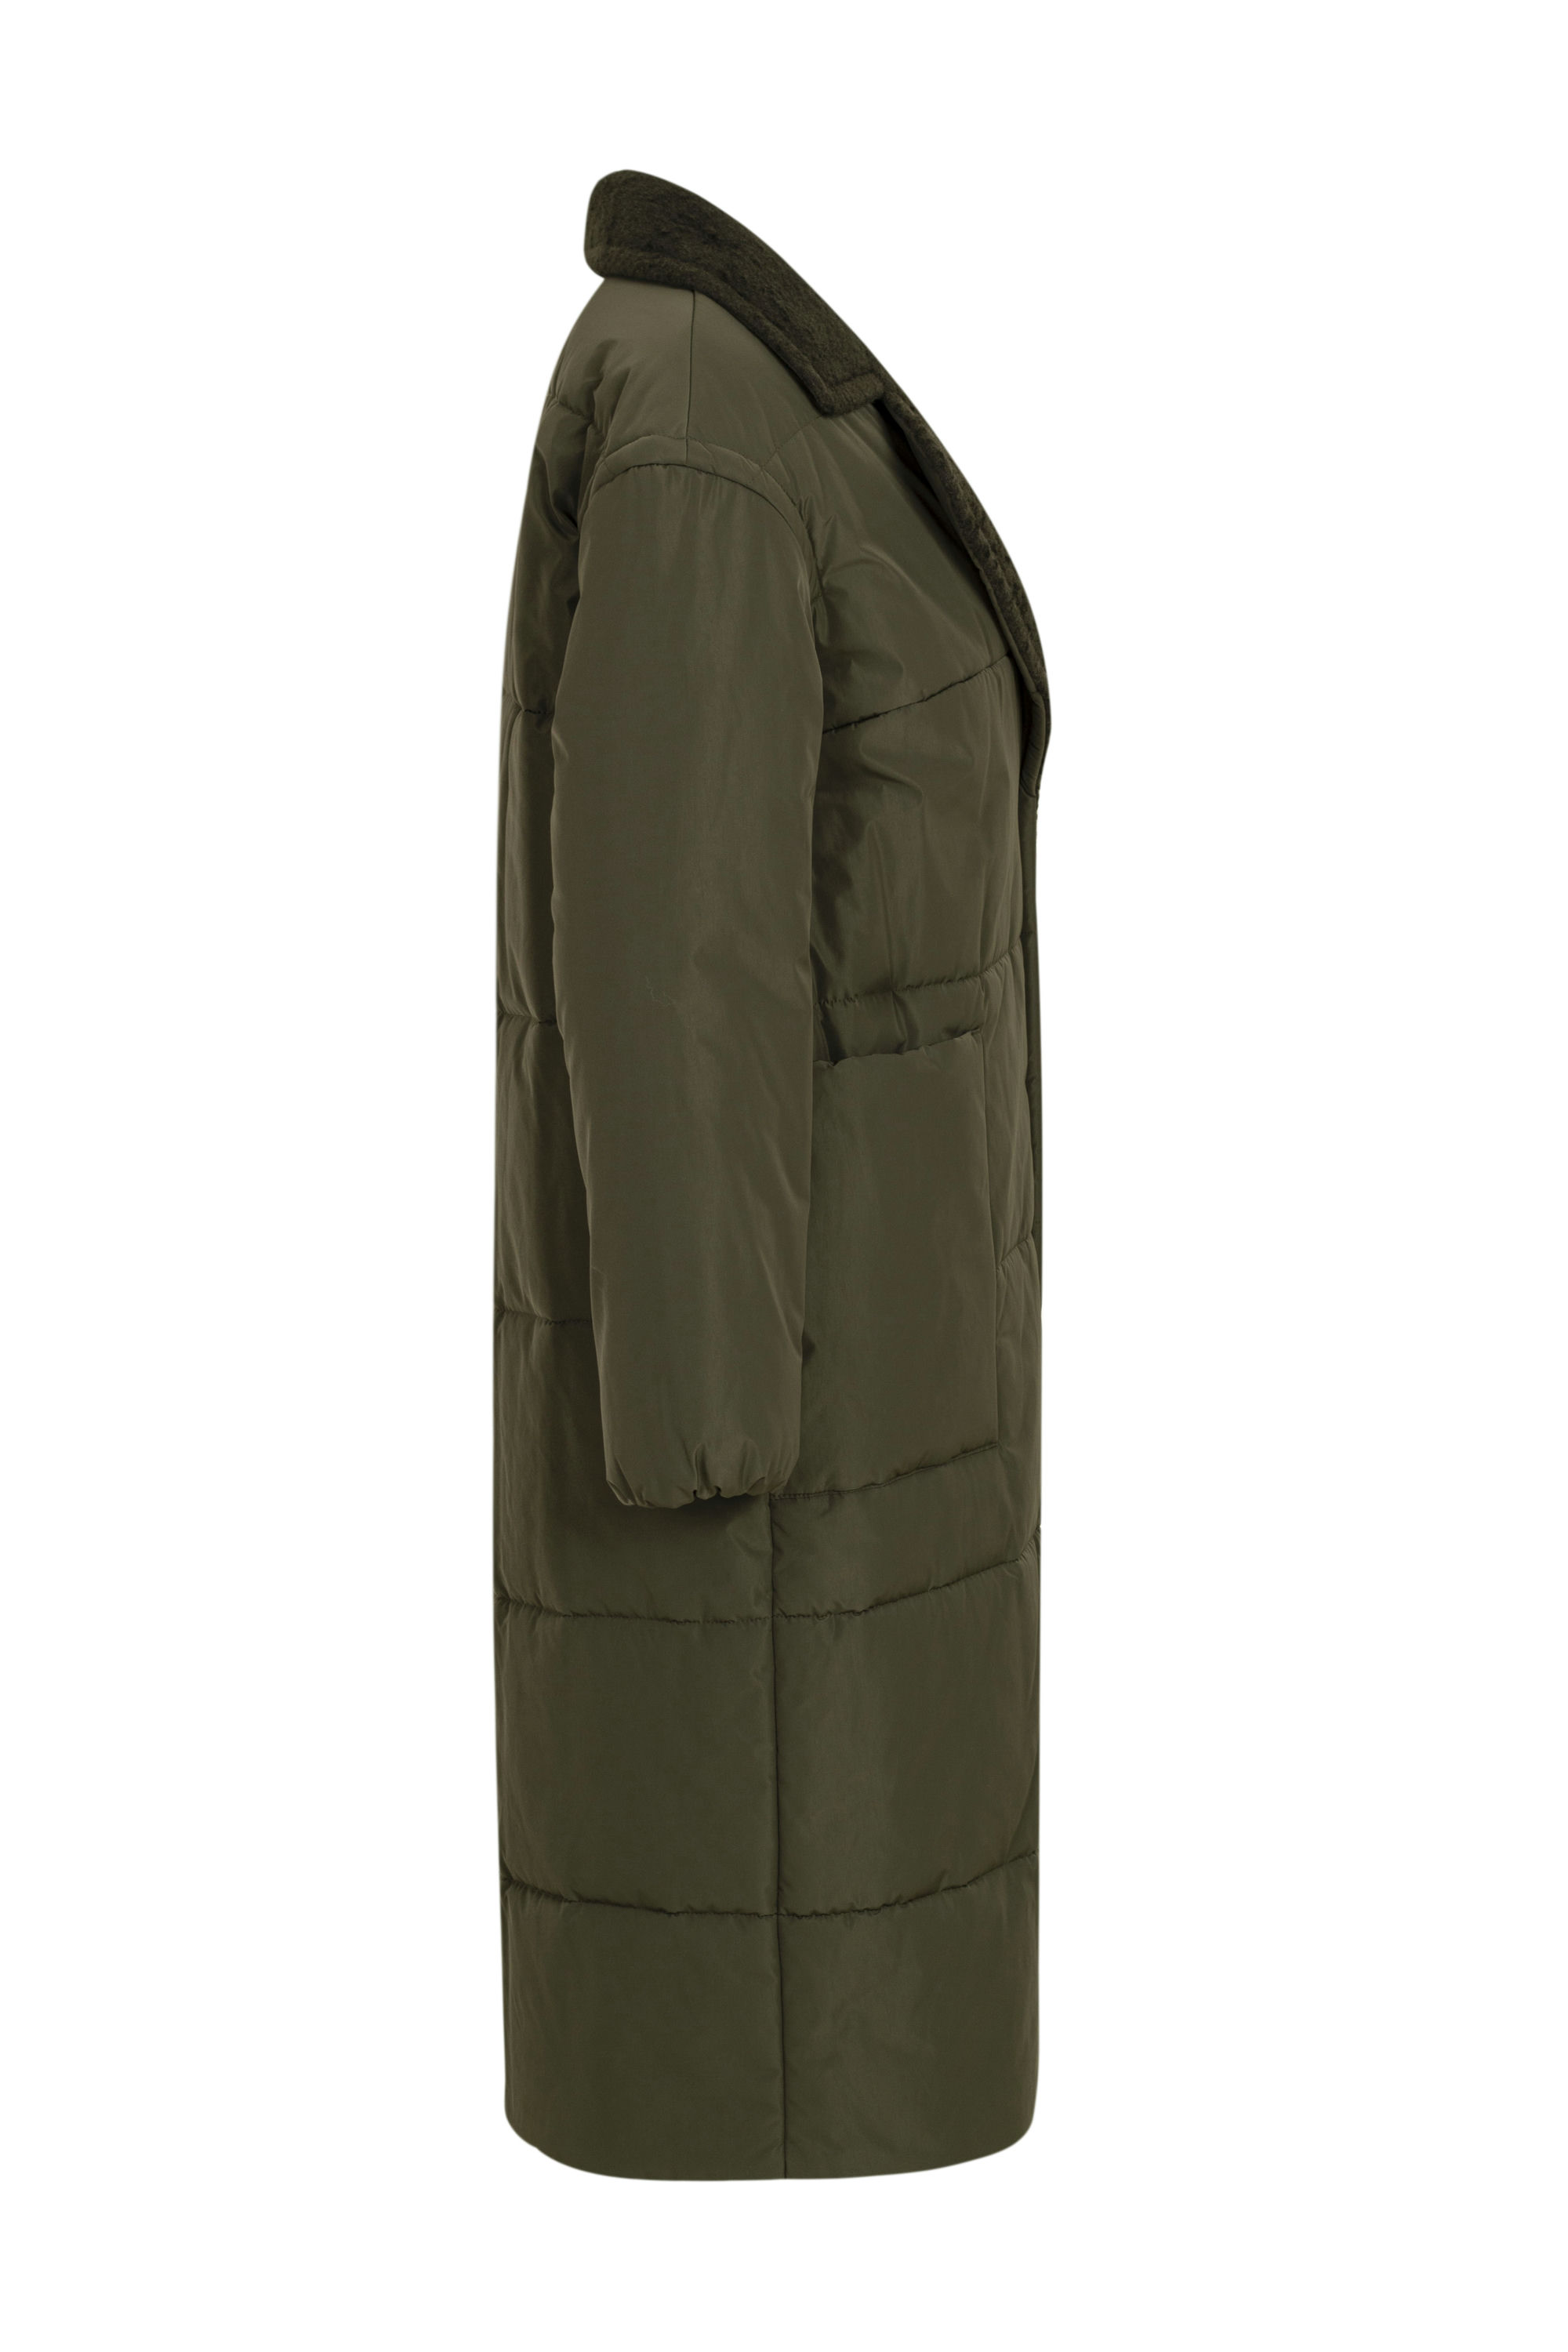 Пальто женское плащевое утепленное 5-12195-1. Фото 2.